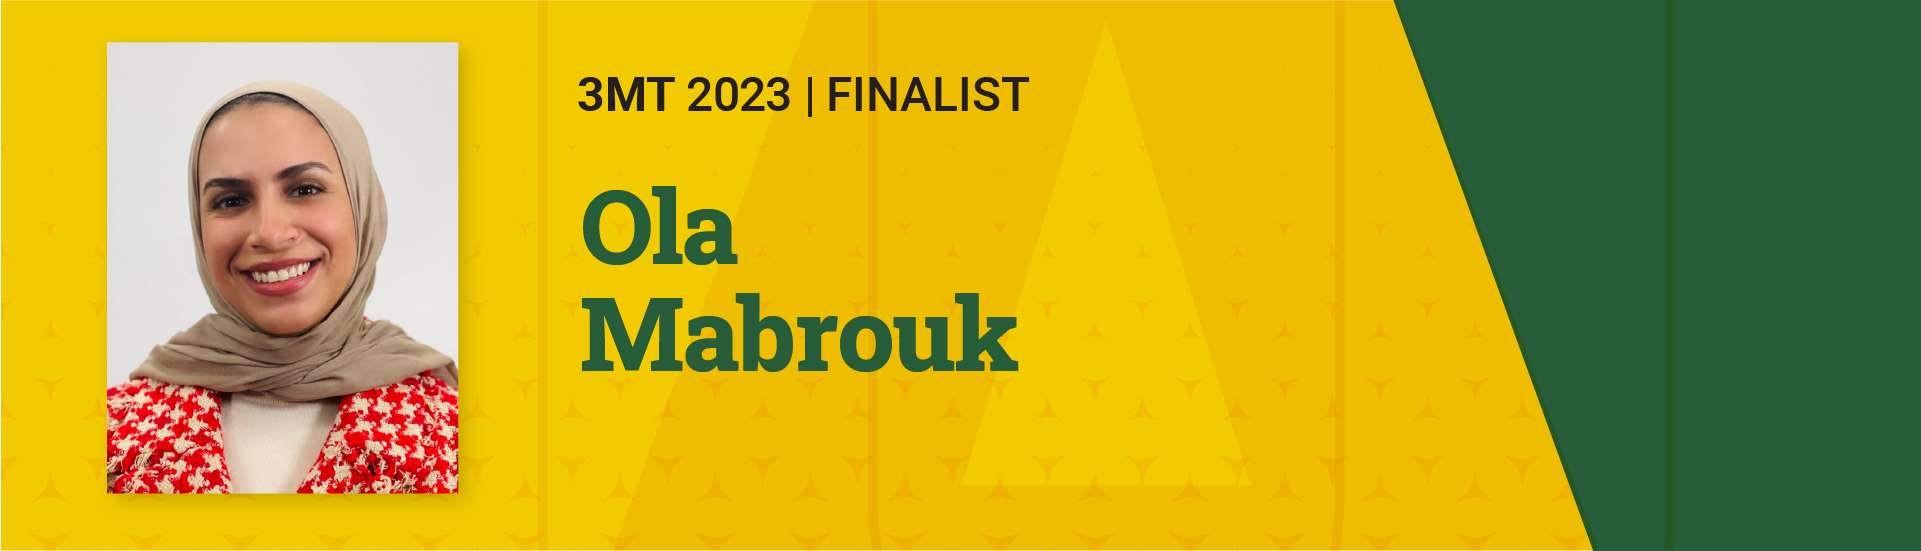 3MT 2023 Finalist  Ola Mabrouk 